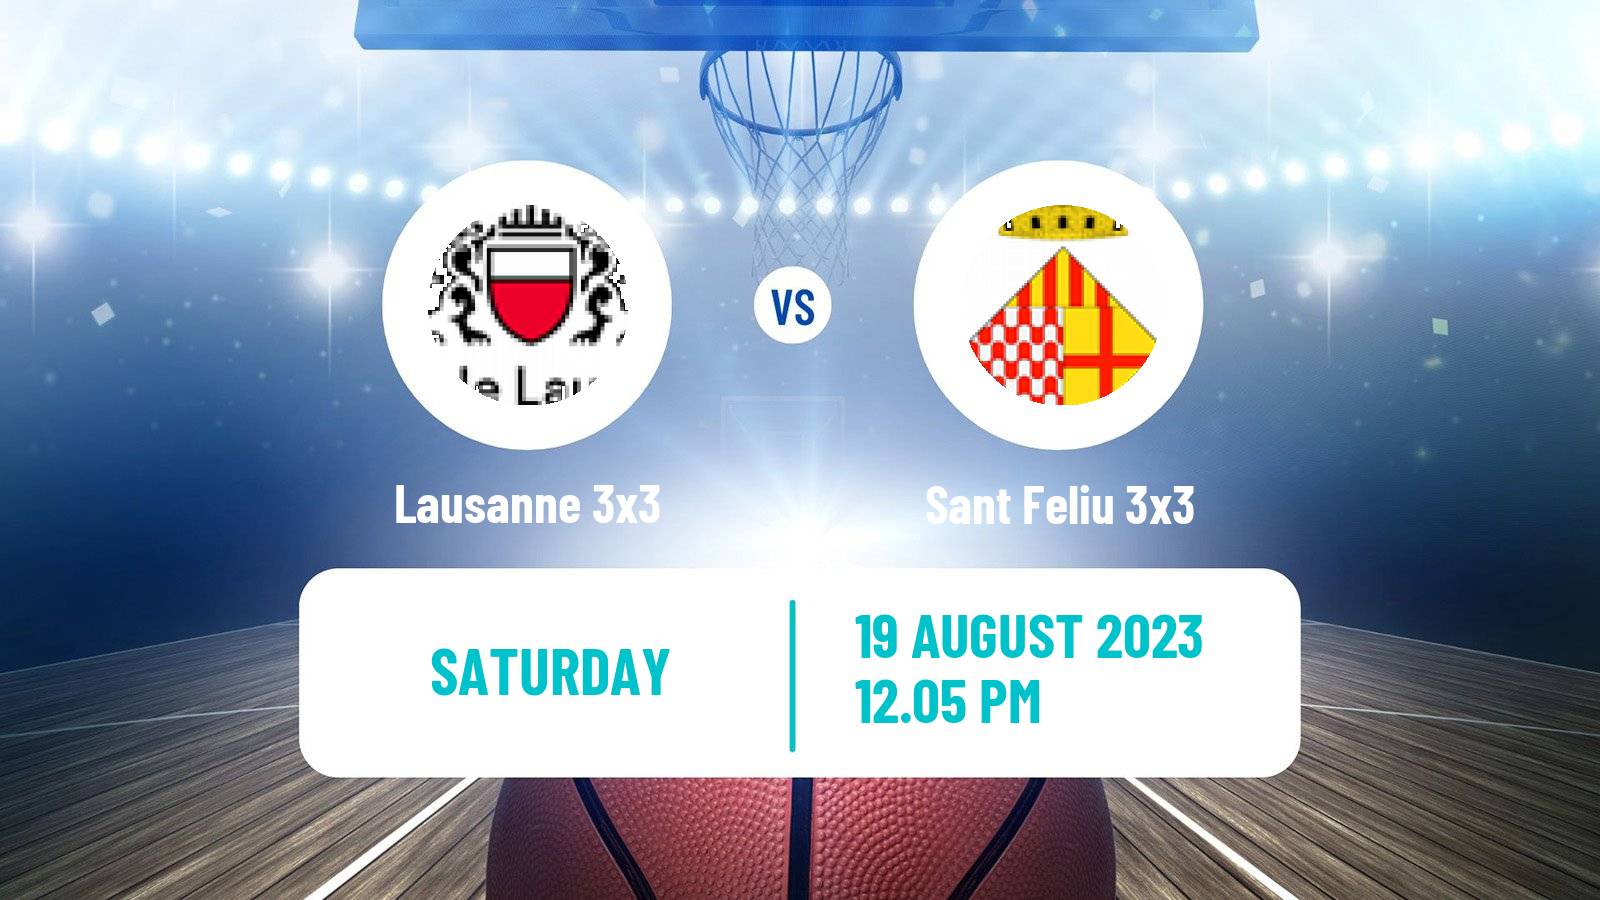 Basketball World Tour Lausanne 3x3 Lausanne 3x3 - Sant Feliu 3x3